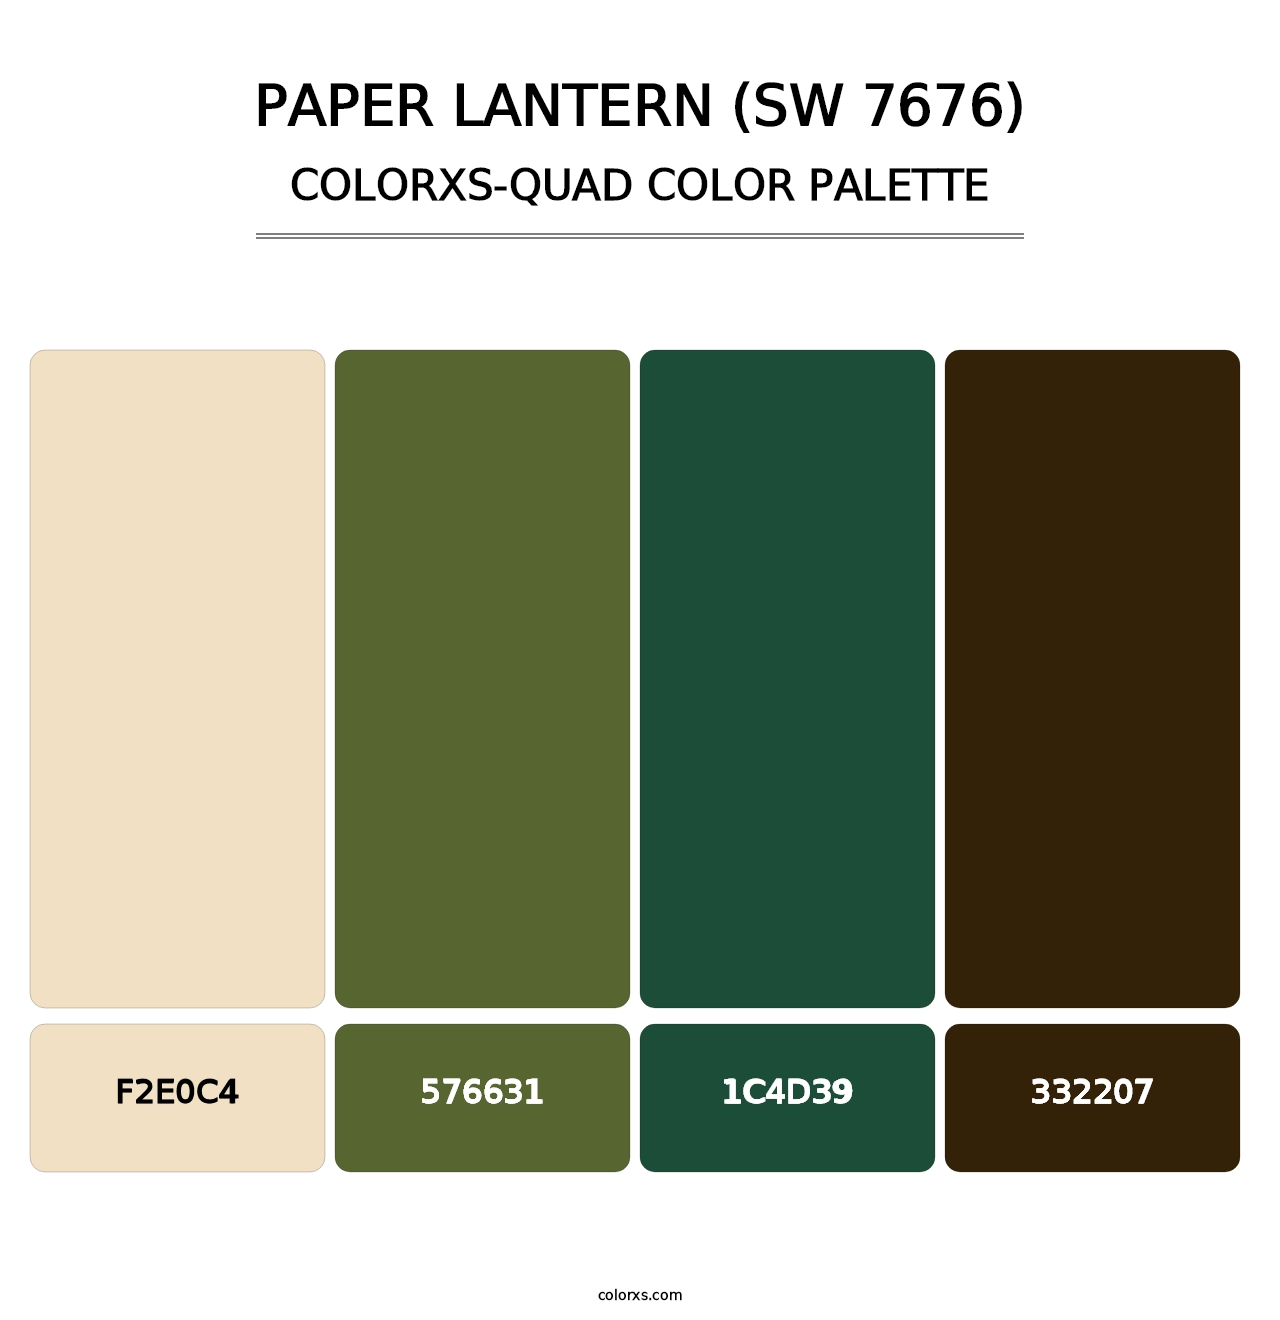 Paper Lantern (SW 7676) - Colorxs Quad Palette